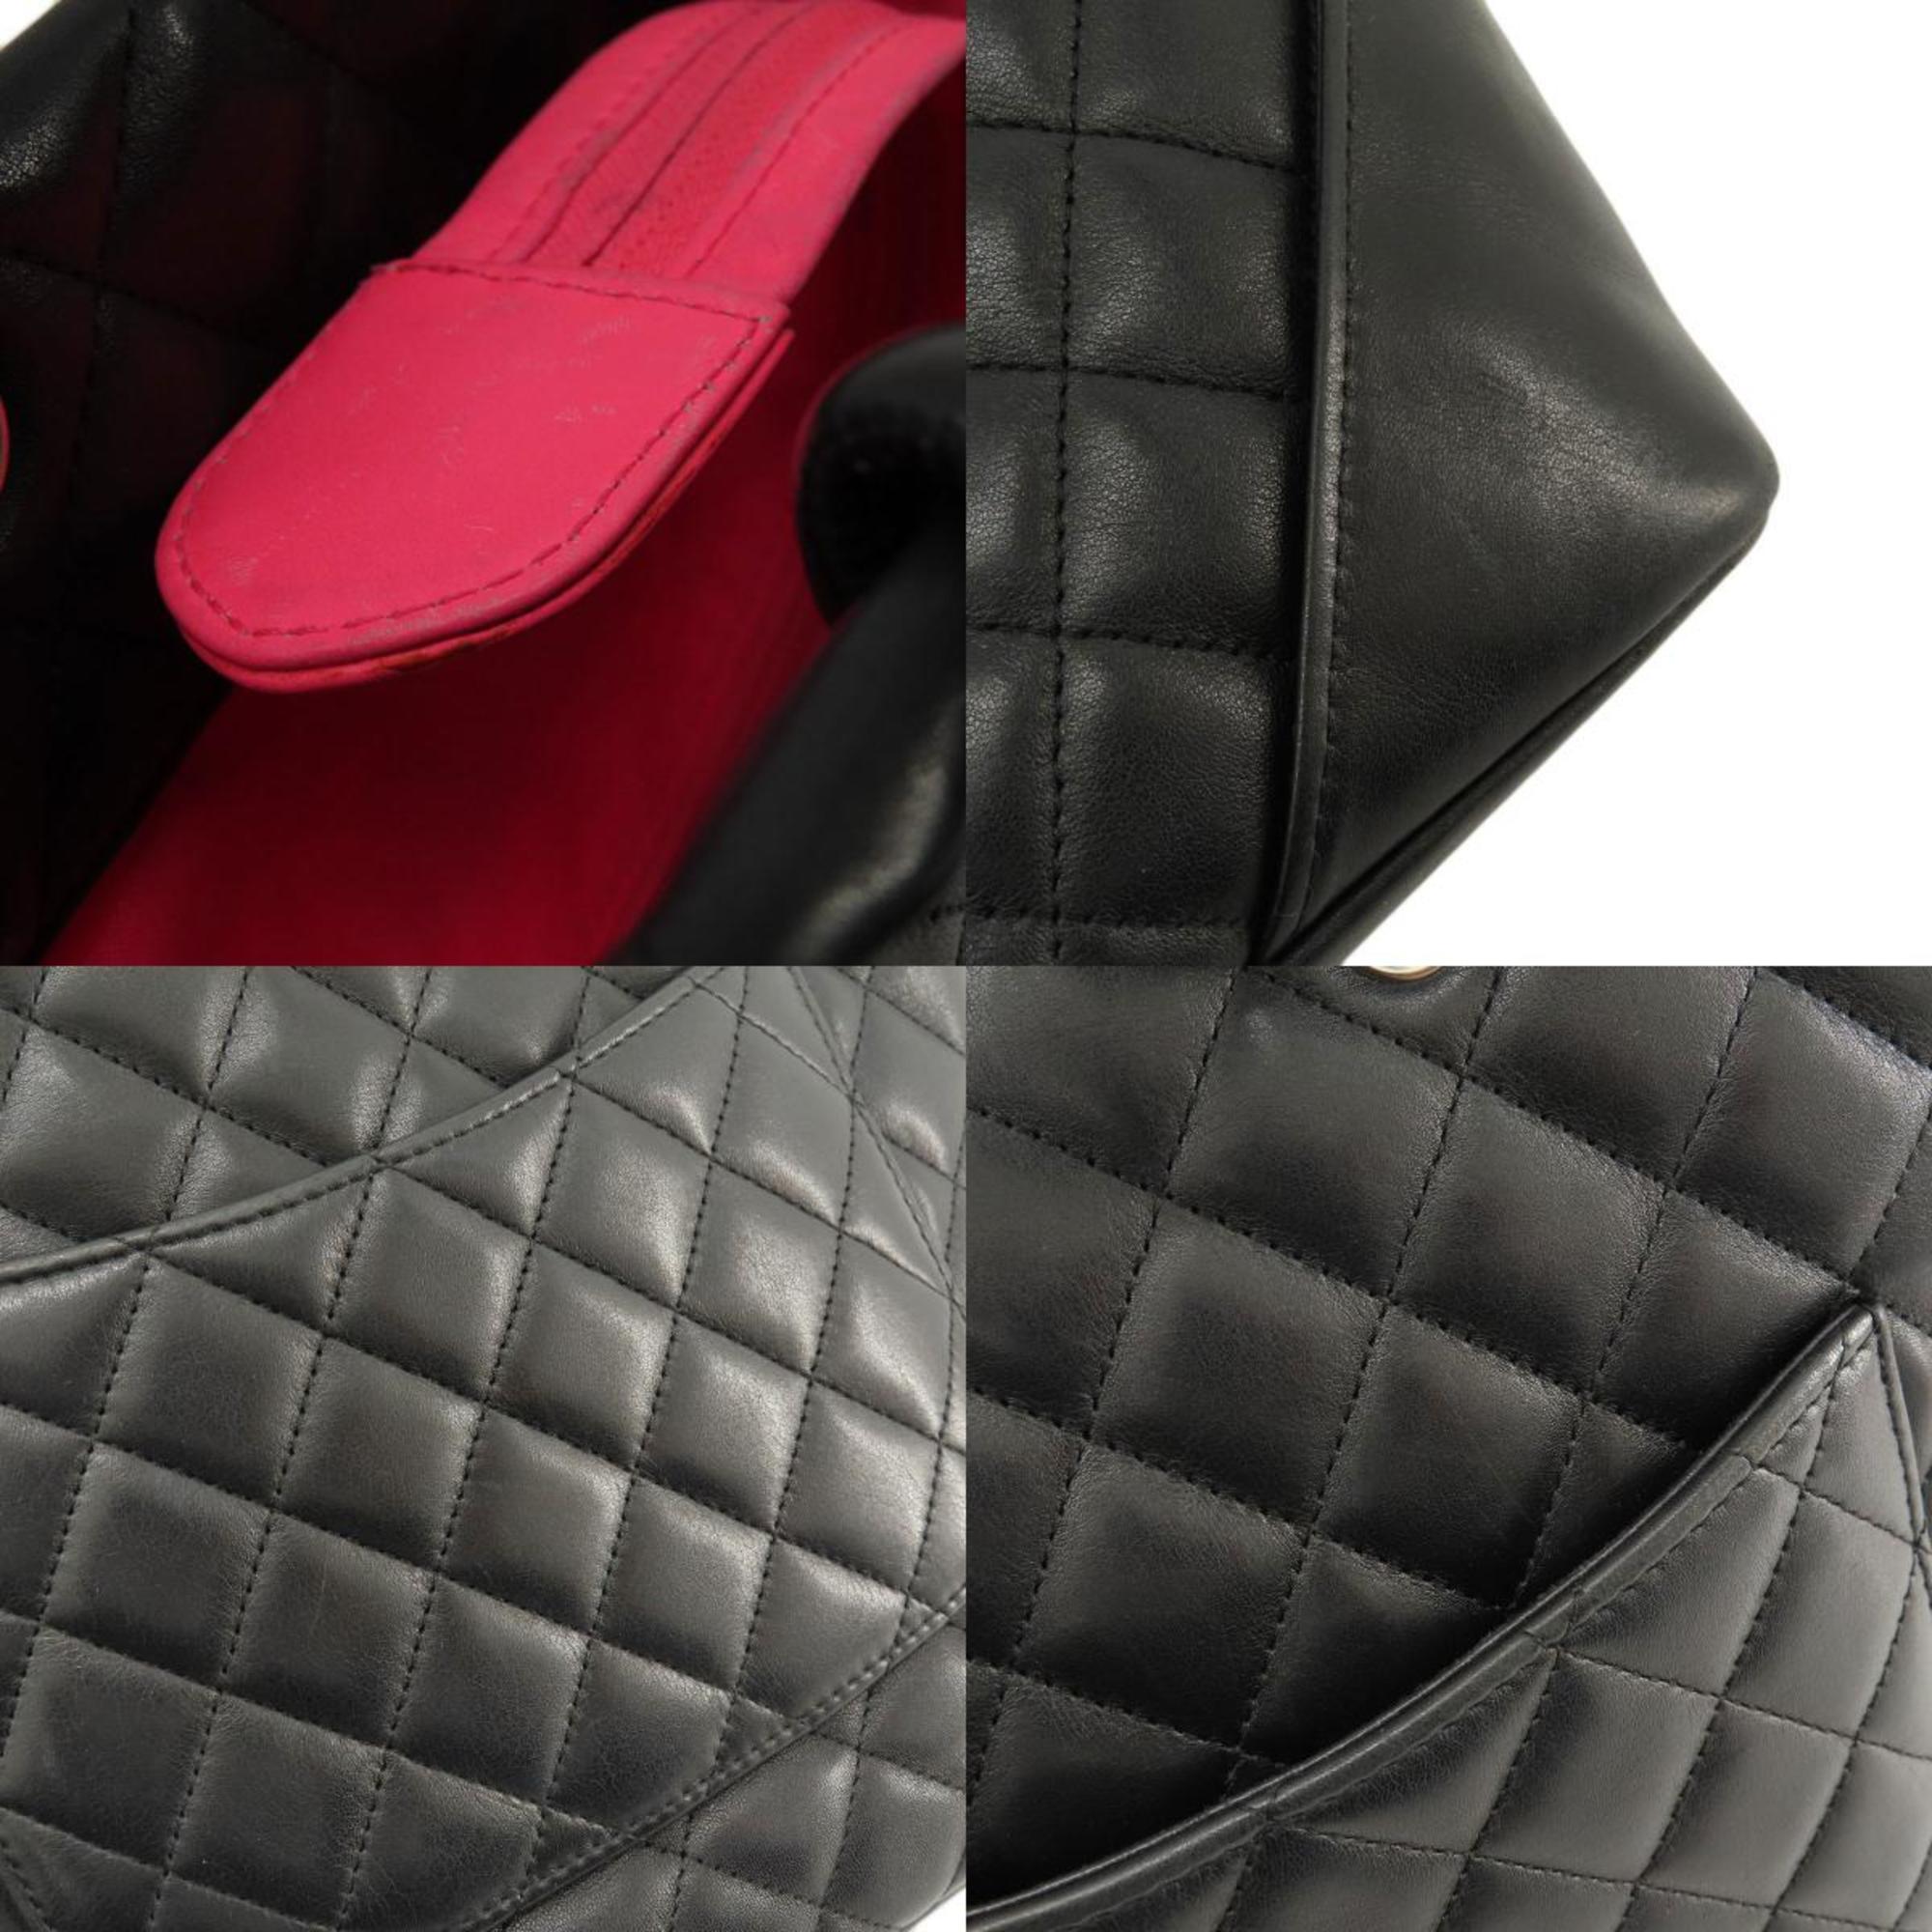 Chanel A25166 Cambon Line Small Handbag Calfskin Women's